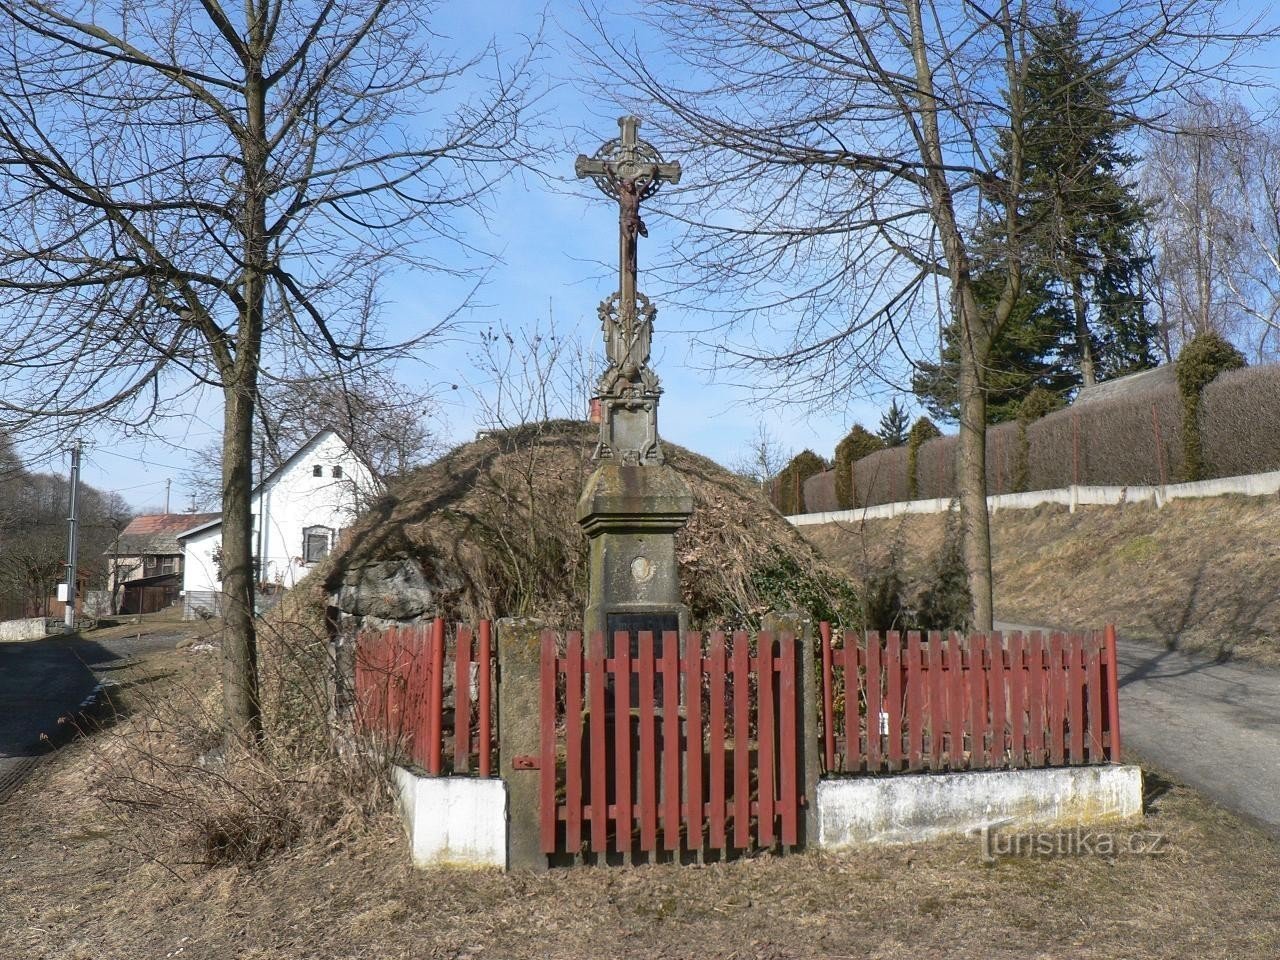 Velenovy, krzyż we wsi